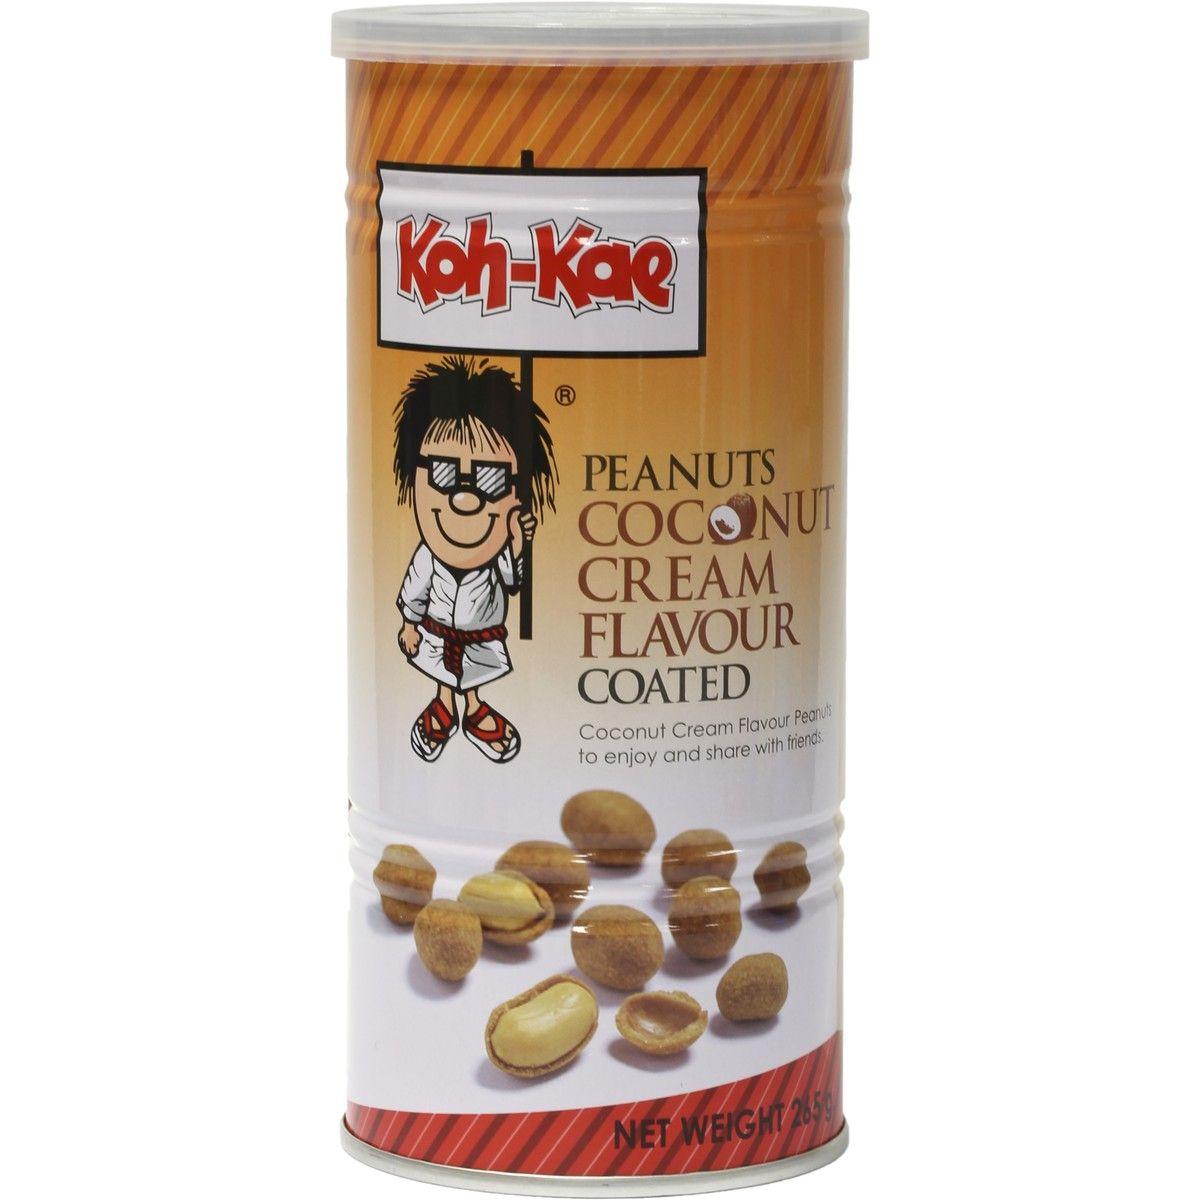 Koh-Kae Logo - Koh Kae Peanuts Coconut Cream Flavour Coated 265g